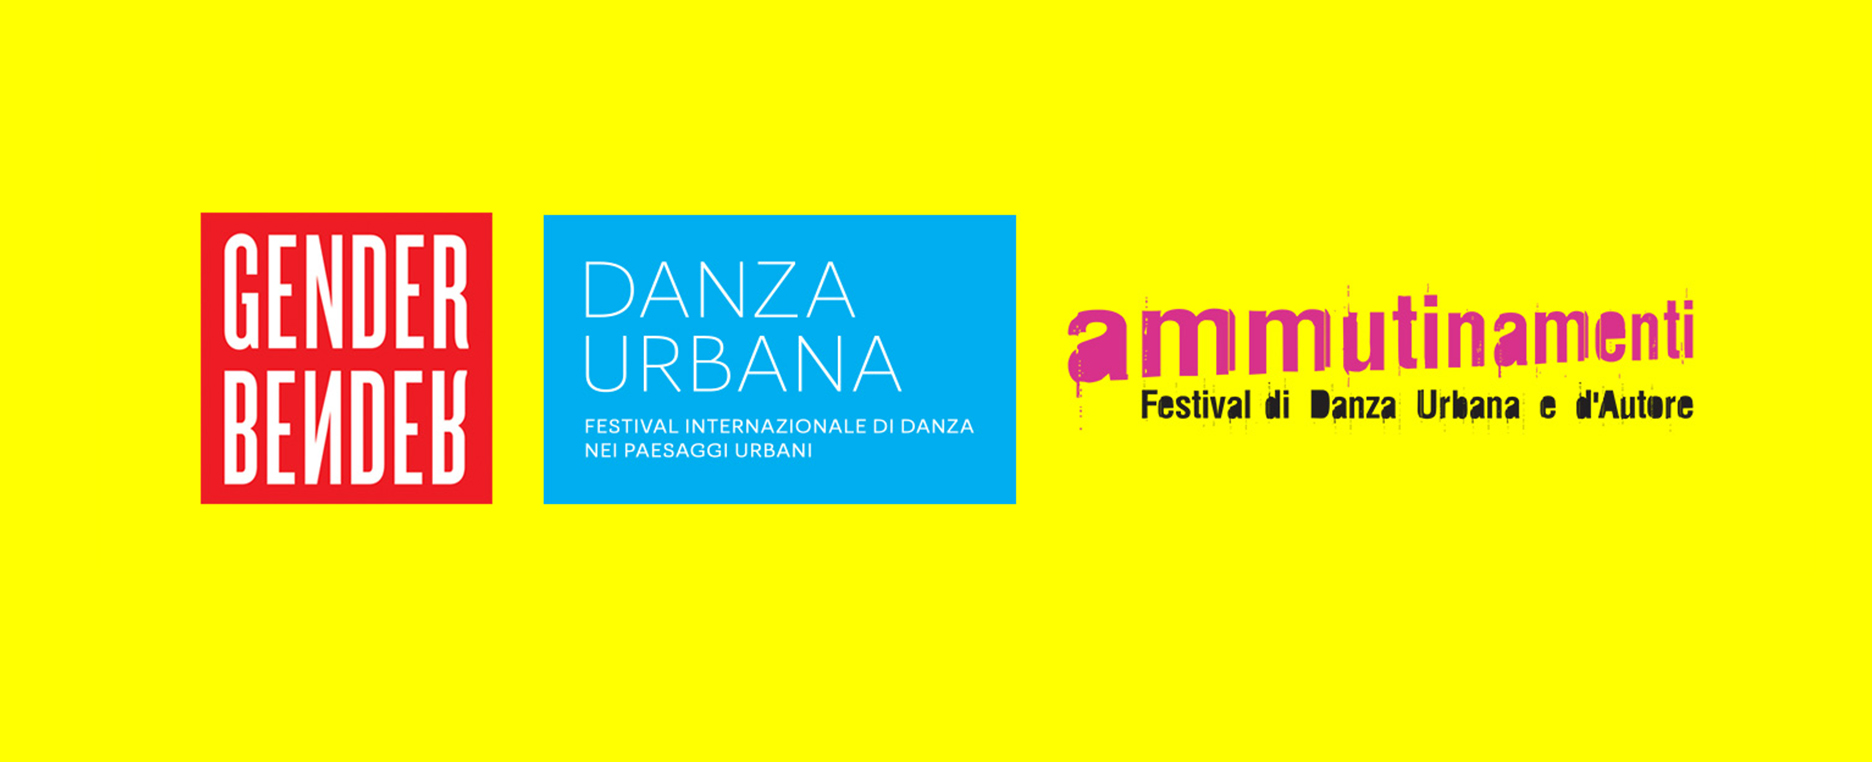 Un mese dedicato alla danza in Emilia-Romagna